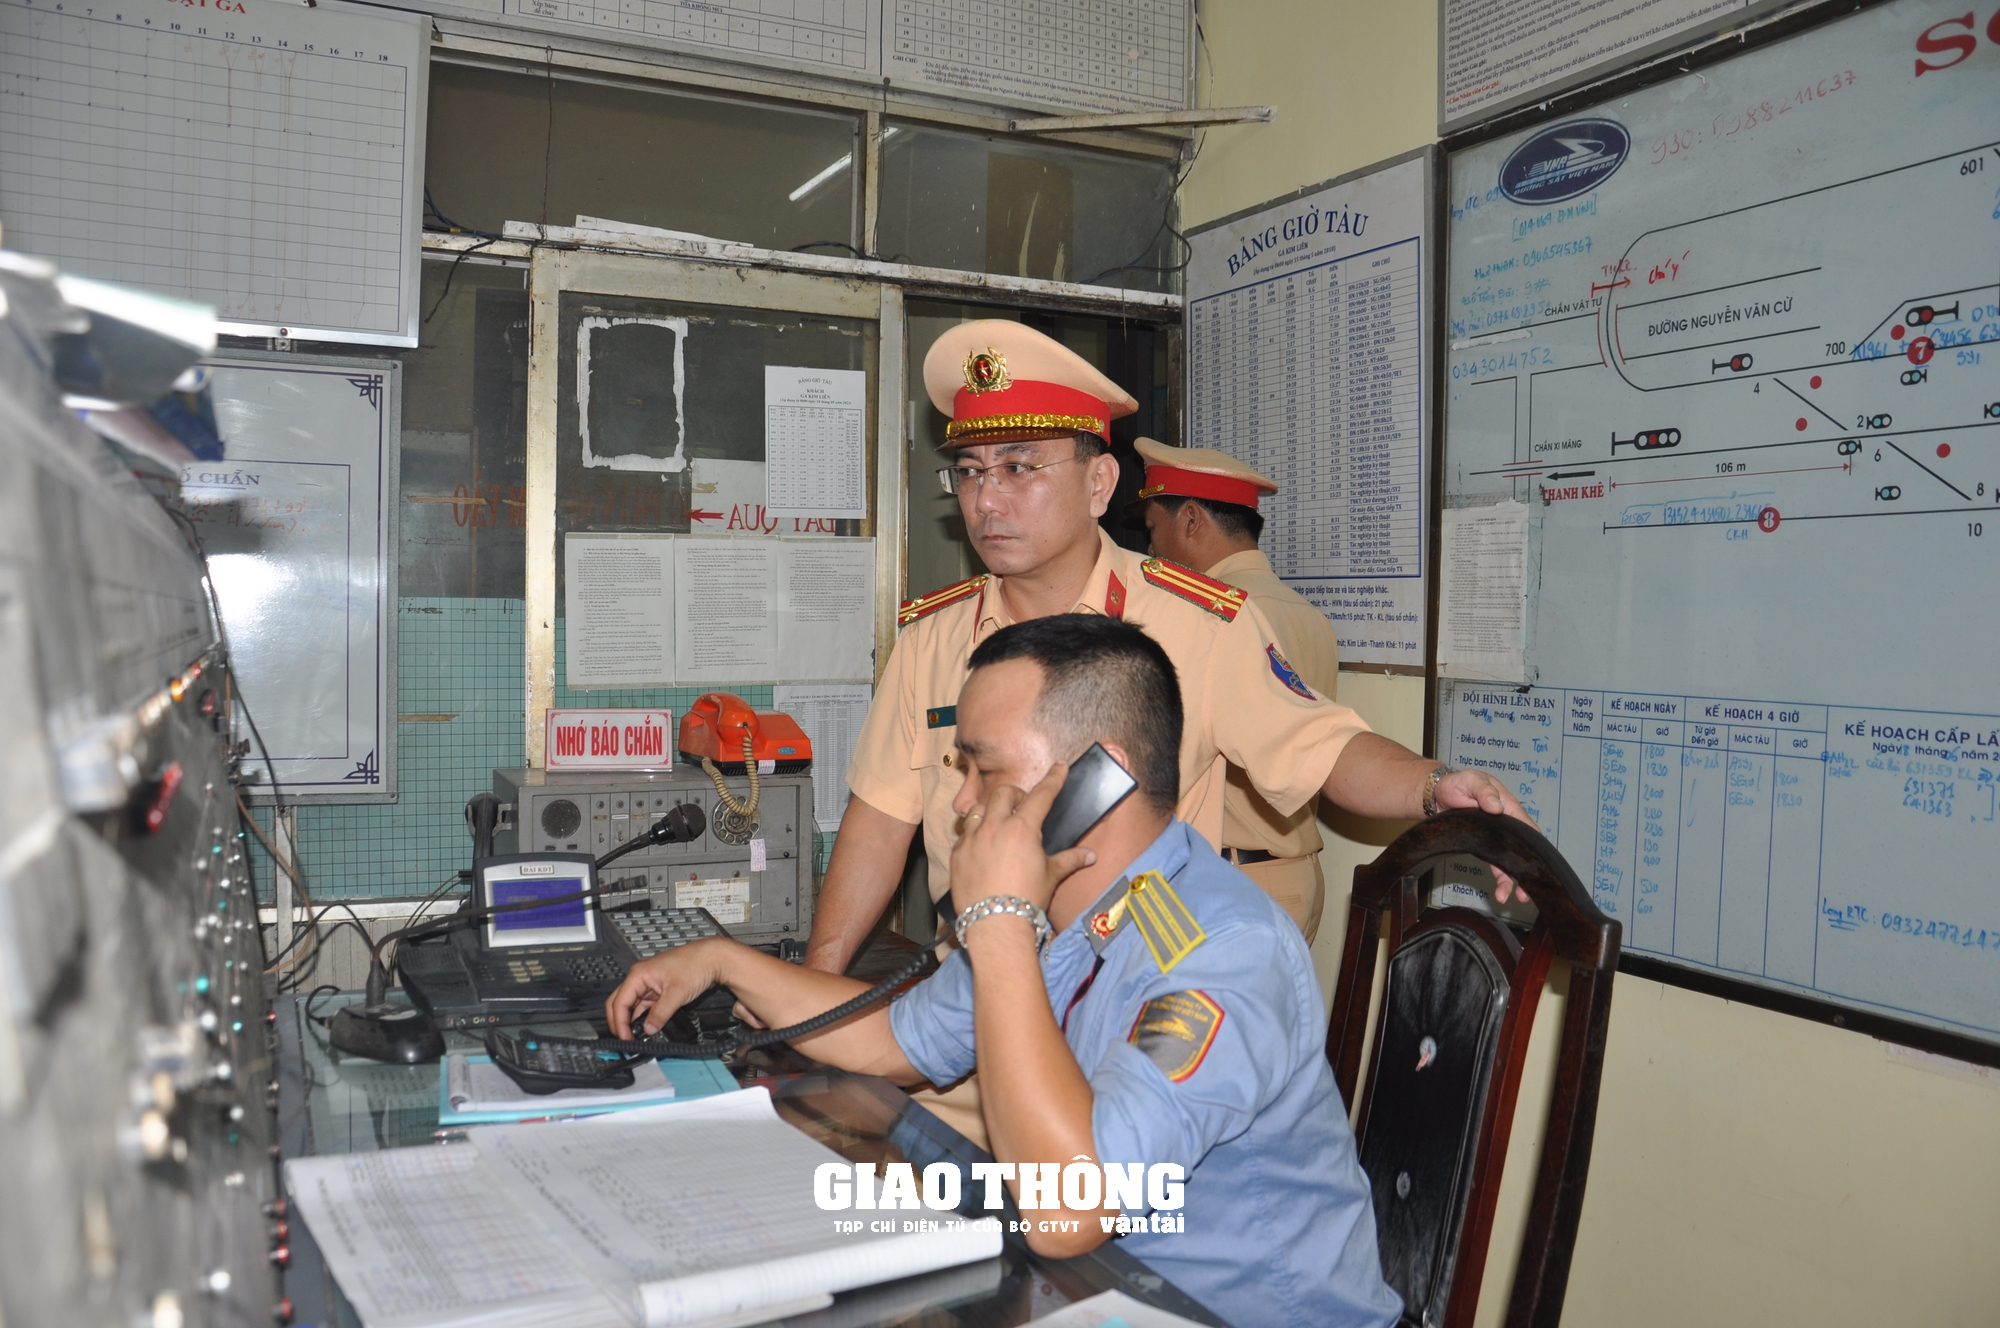 CSGT xuyên ngày đêm kiểm tra nồng độ cồn, ma túy nhân viên đường sắt ở Đà Nẵng - Ảnh 3.